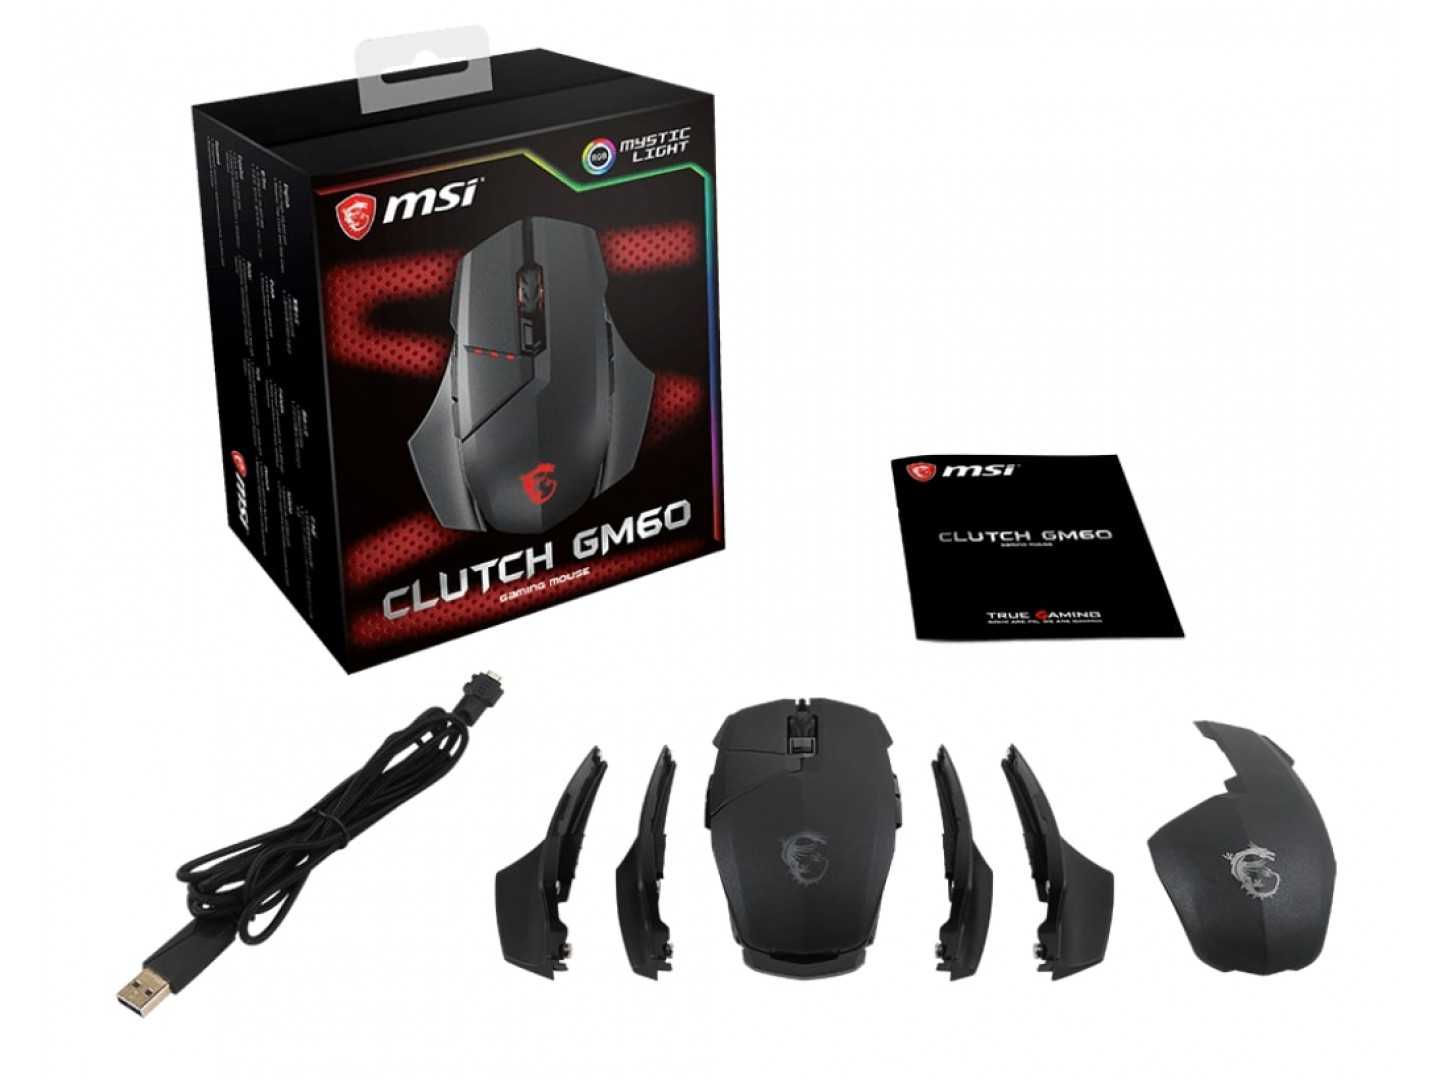 Игровая мышь msi clutch gm60 – обзор манипулятора